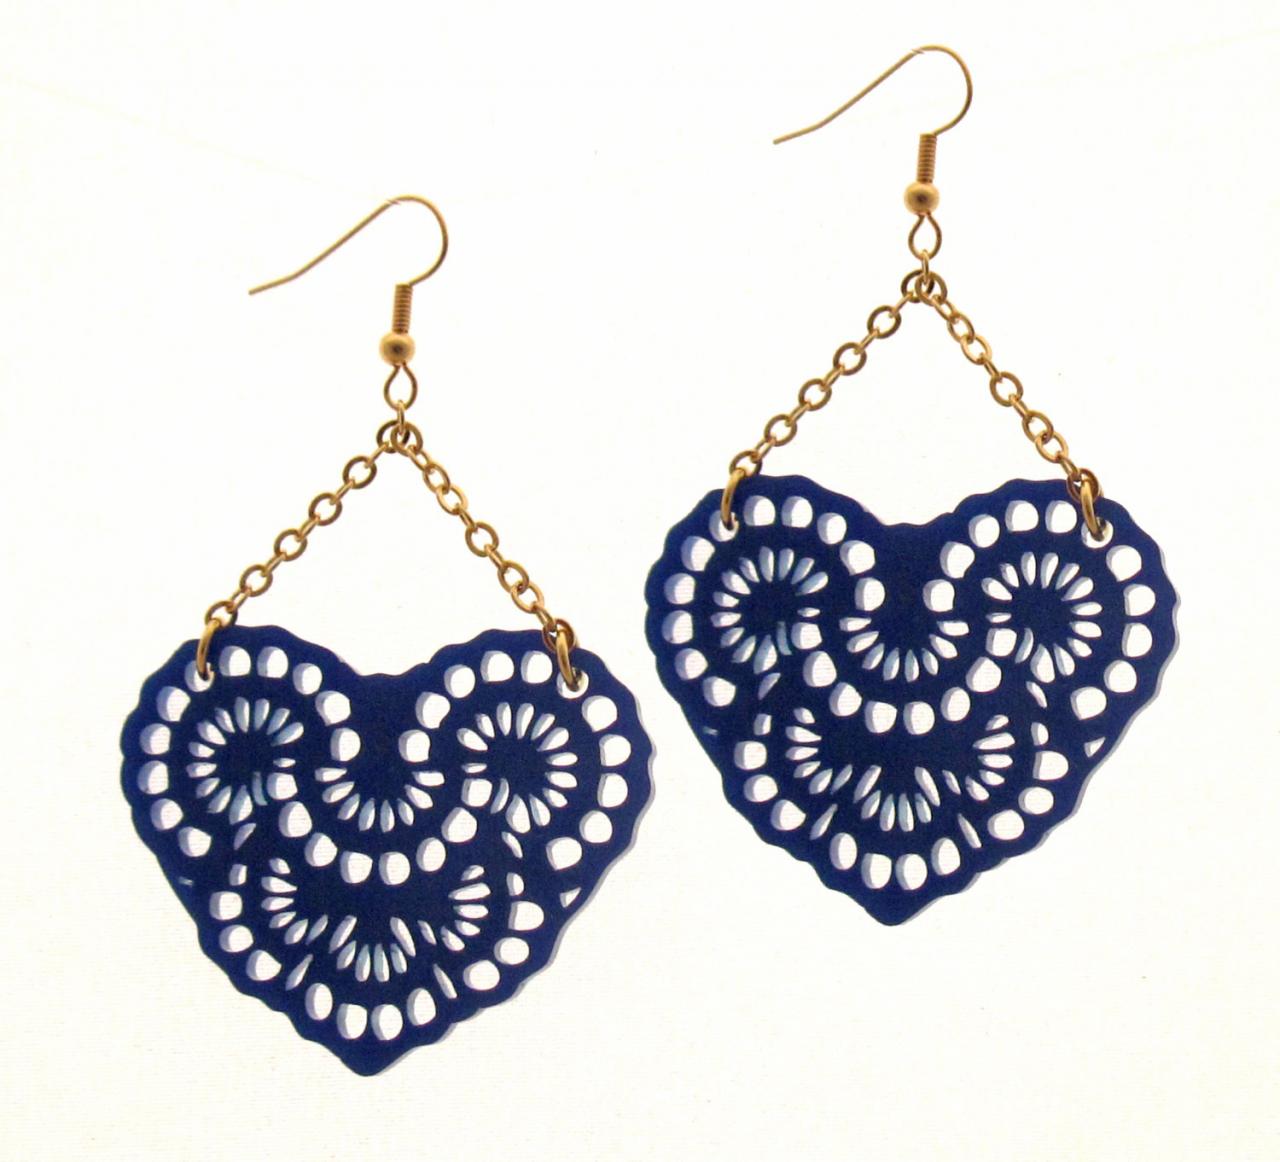 Baronyka French Lace Earrings - Blue Chandelier Earrings - Love Jewelry - Romantic Jewelry - Heart Jewelry - Girlfriend Gift